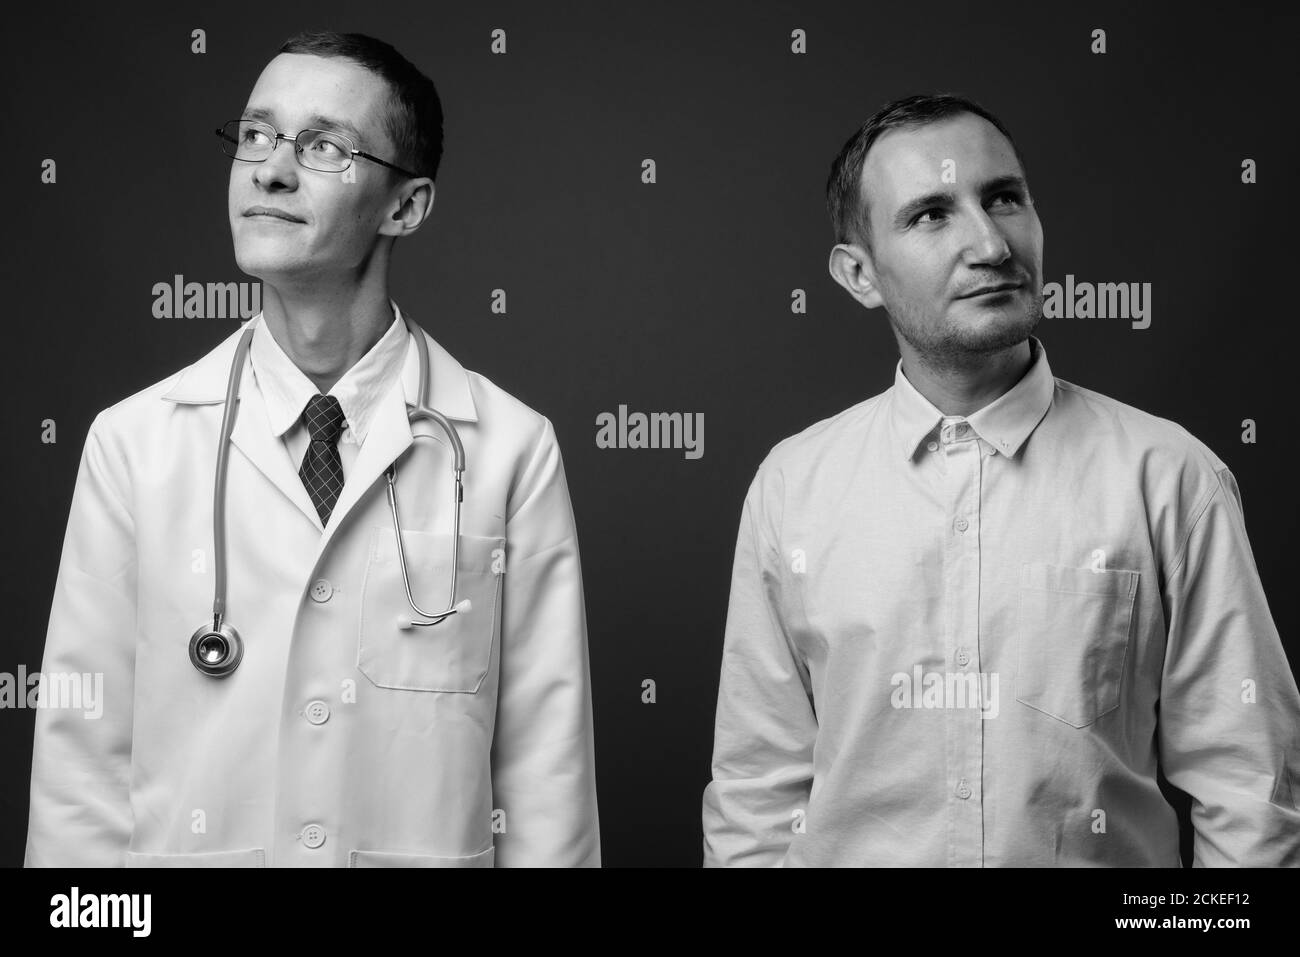 Jeune homme médecin et homme patient sur fond gris Banque D'Images